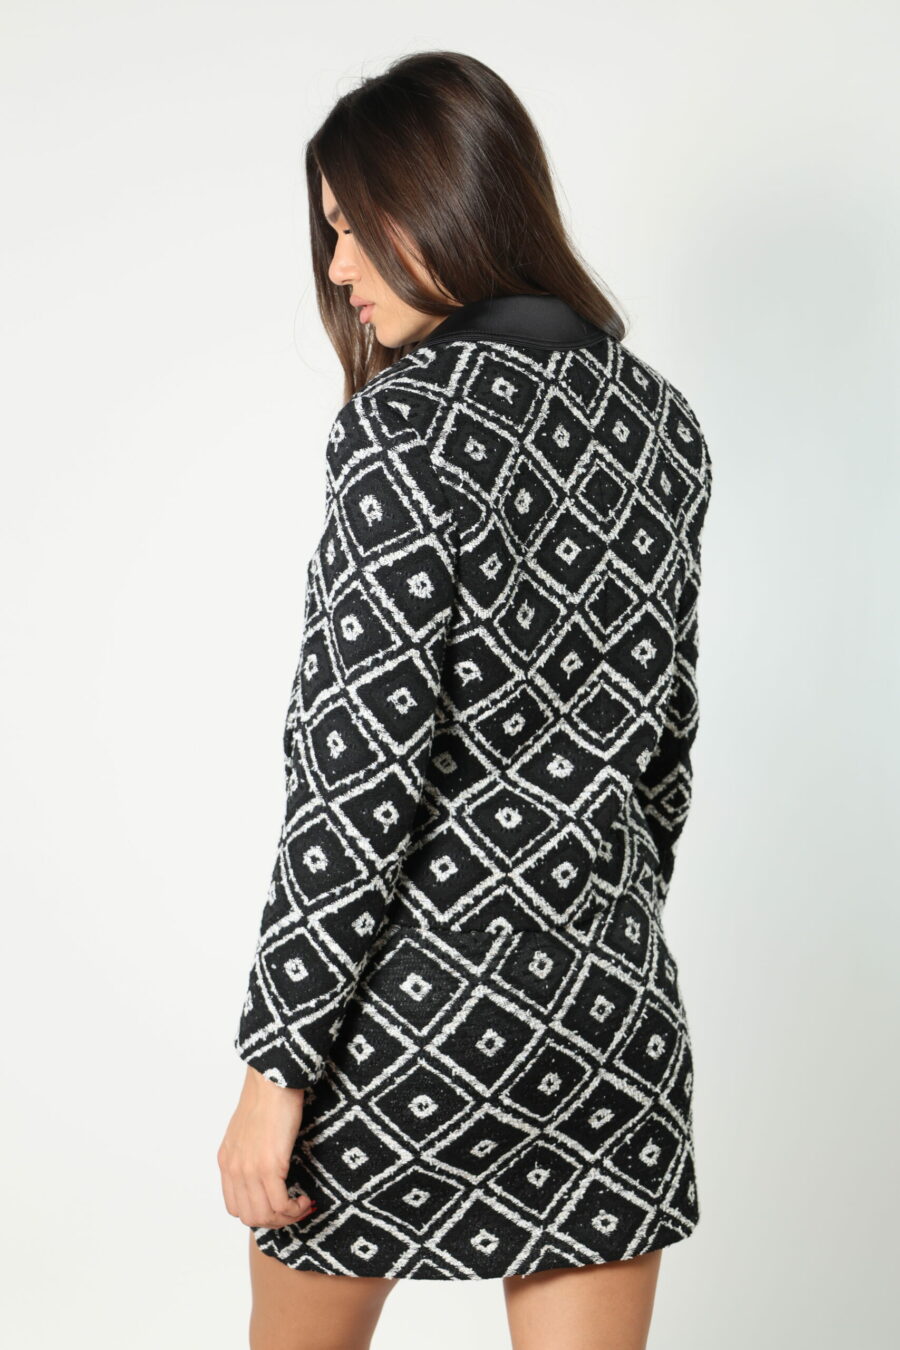 Black and white geometric jacket "Boucle" - 8052865435499 550 scaled